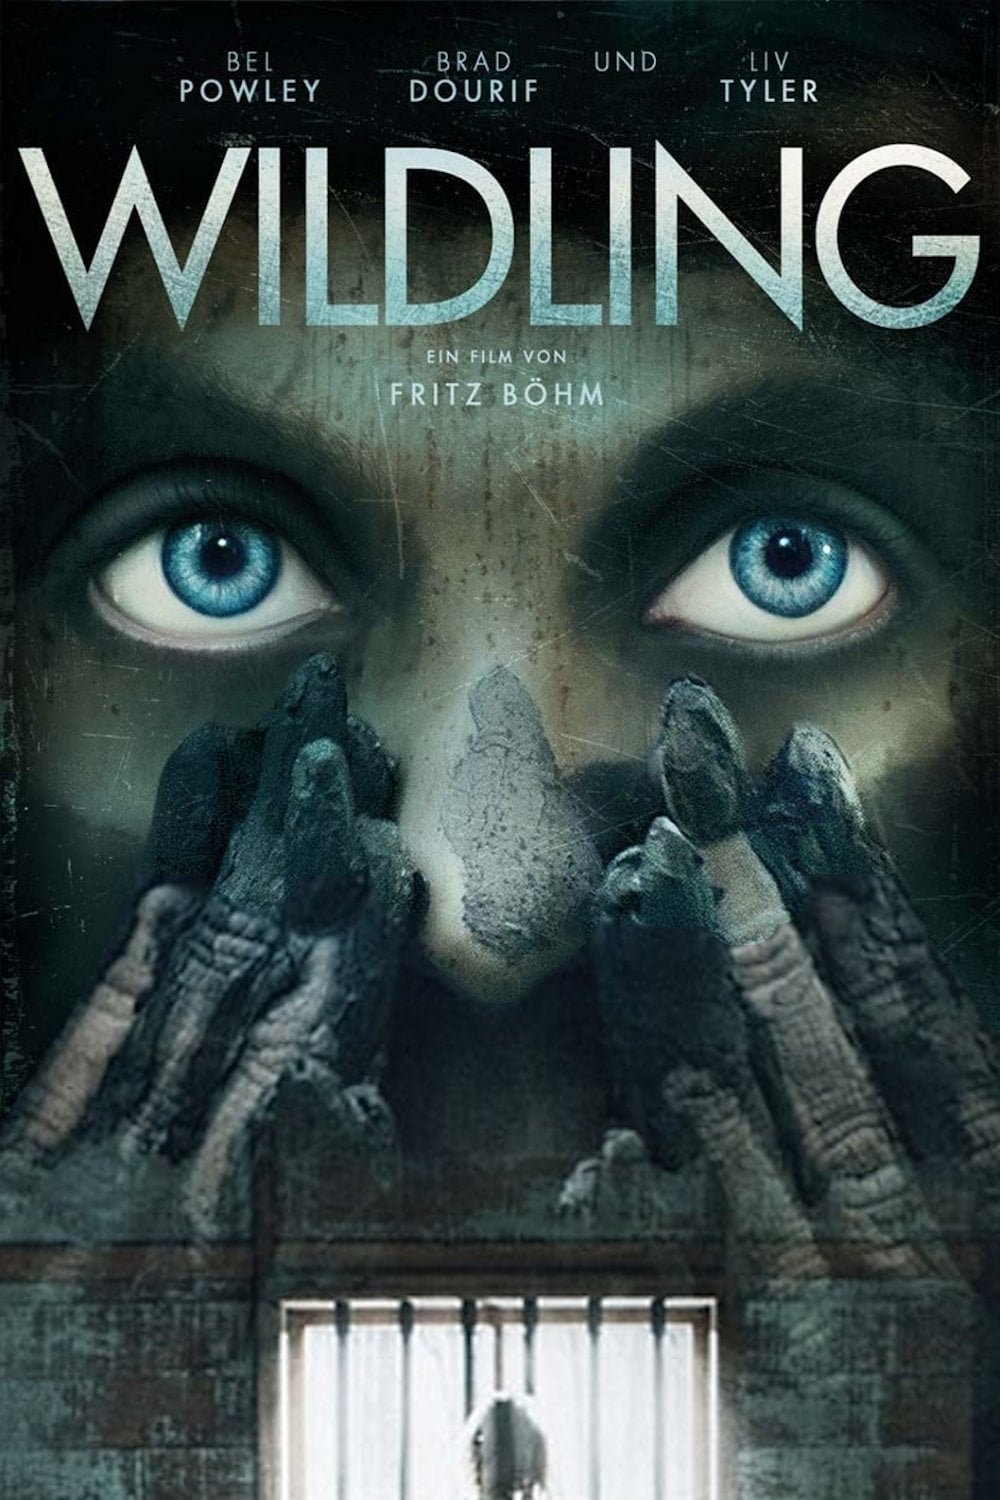 Plakat von "Wildling"